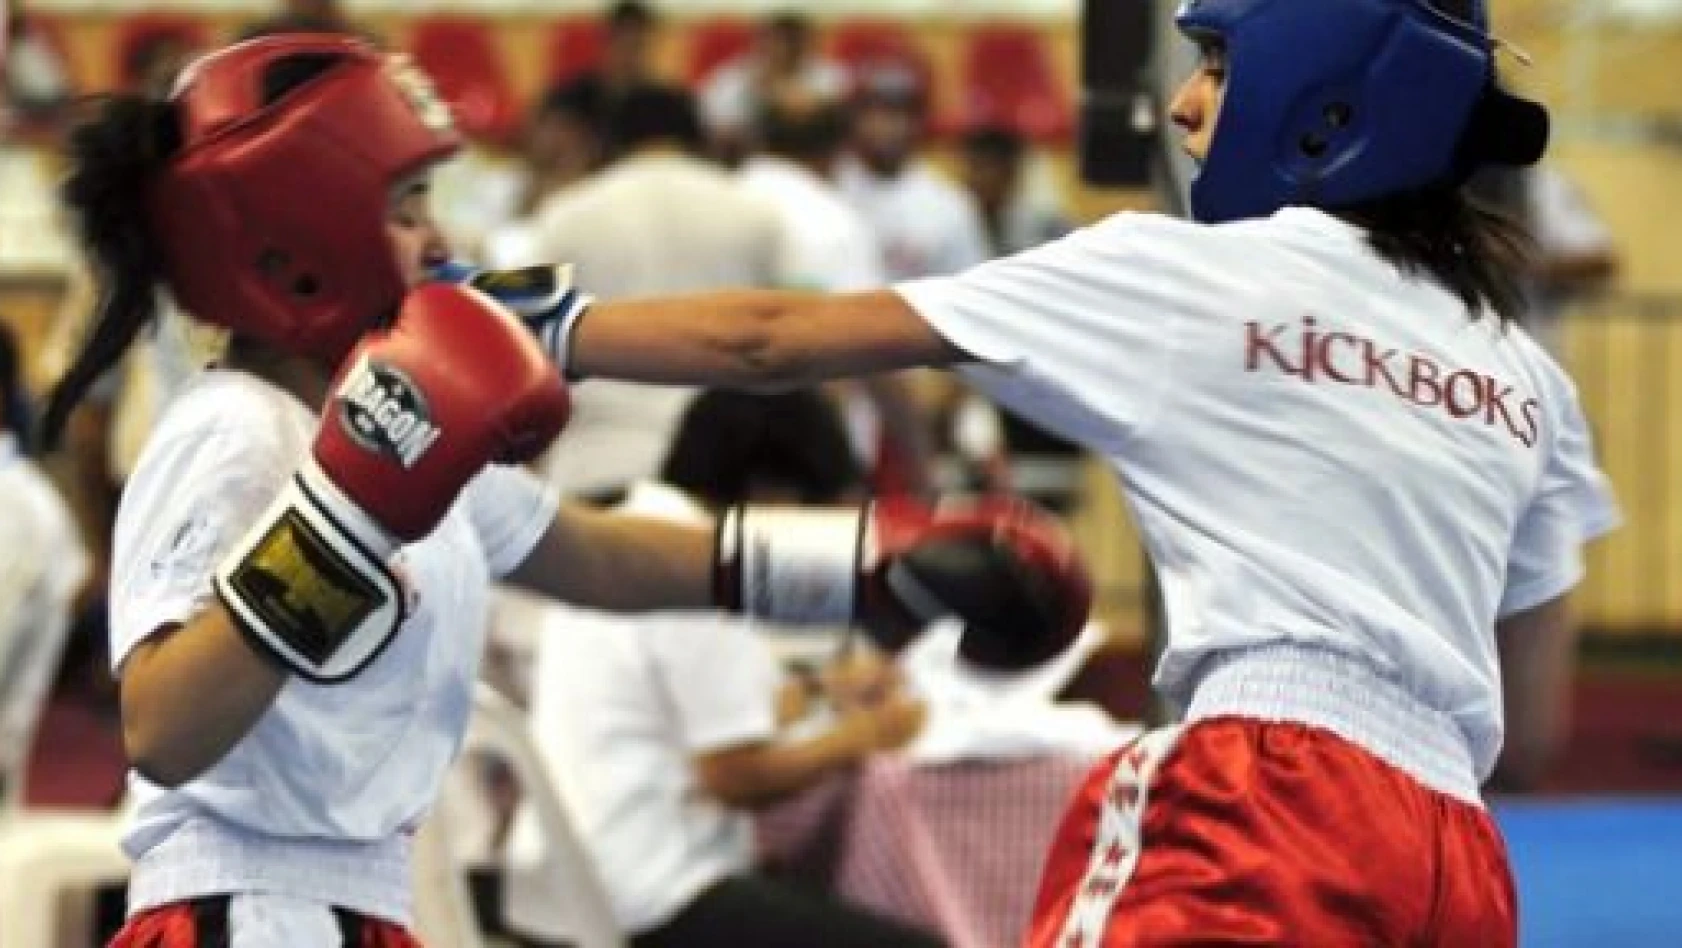 Antalya Dünya Kick Boks Şampiyonası Başlıyor.